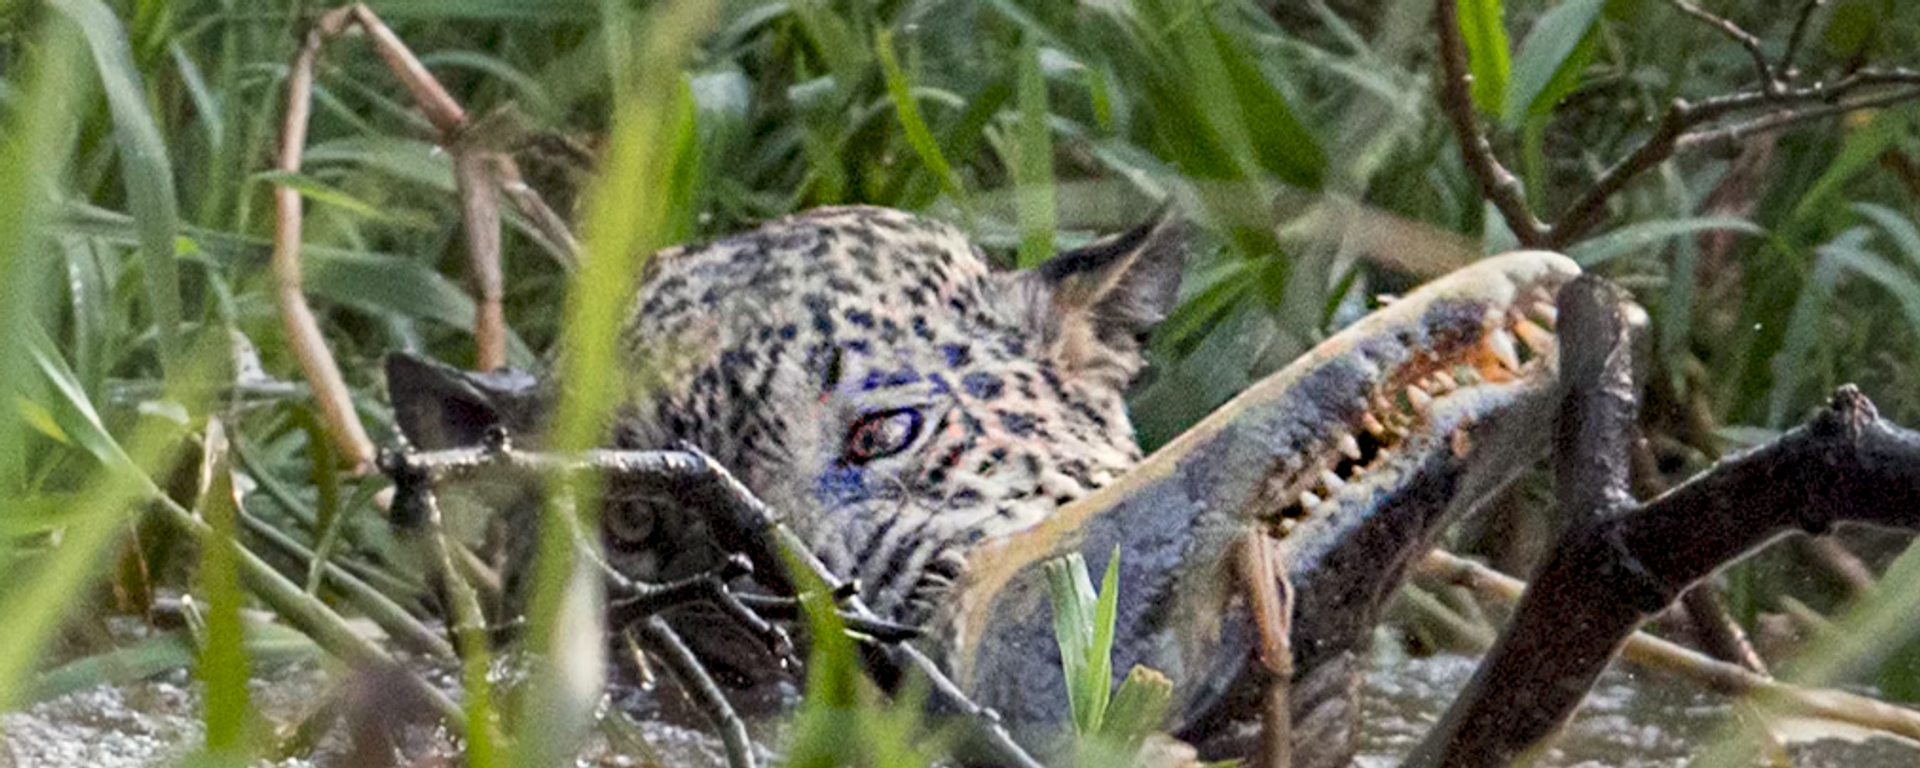 El momento increíble en el que un jaguar mata a un caimán - Sputnik Mundo, 1920, 11.09.2019